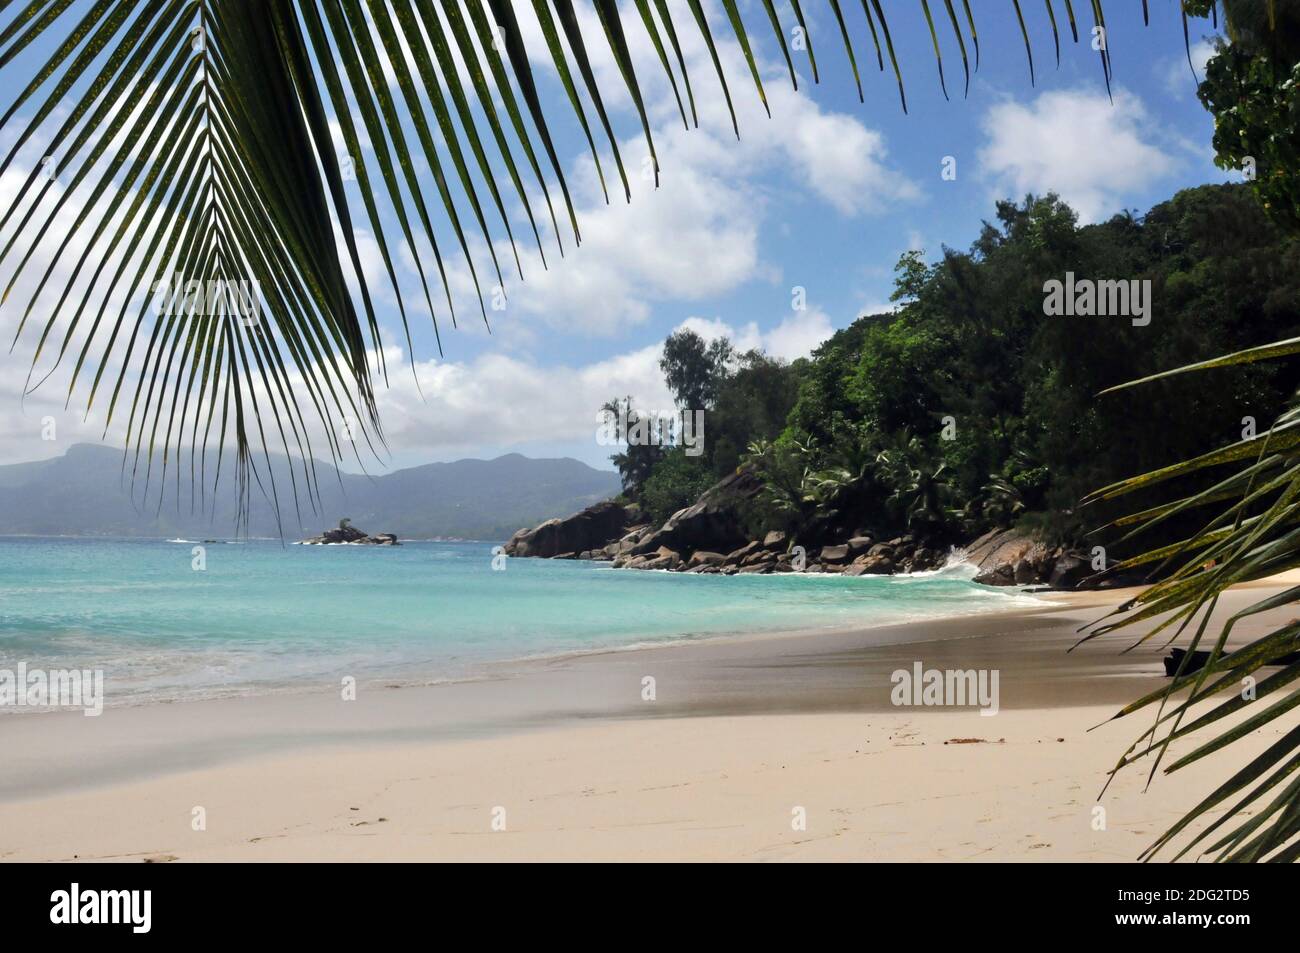 Plage d'Anse Soleil sur l'île Mahé Seychelles - Strand Banque D'Images